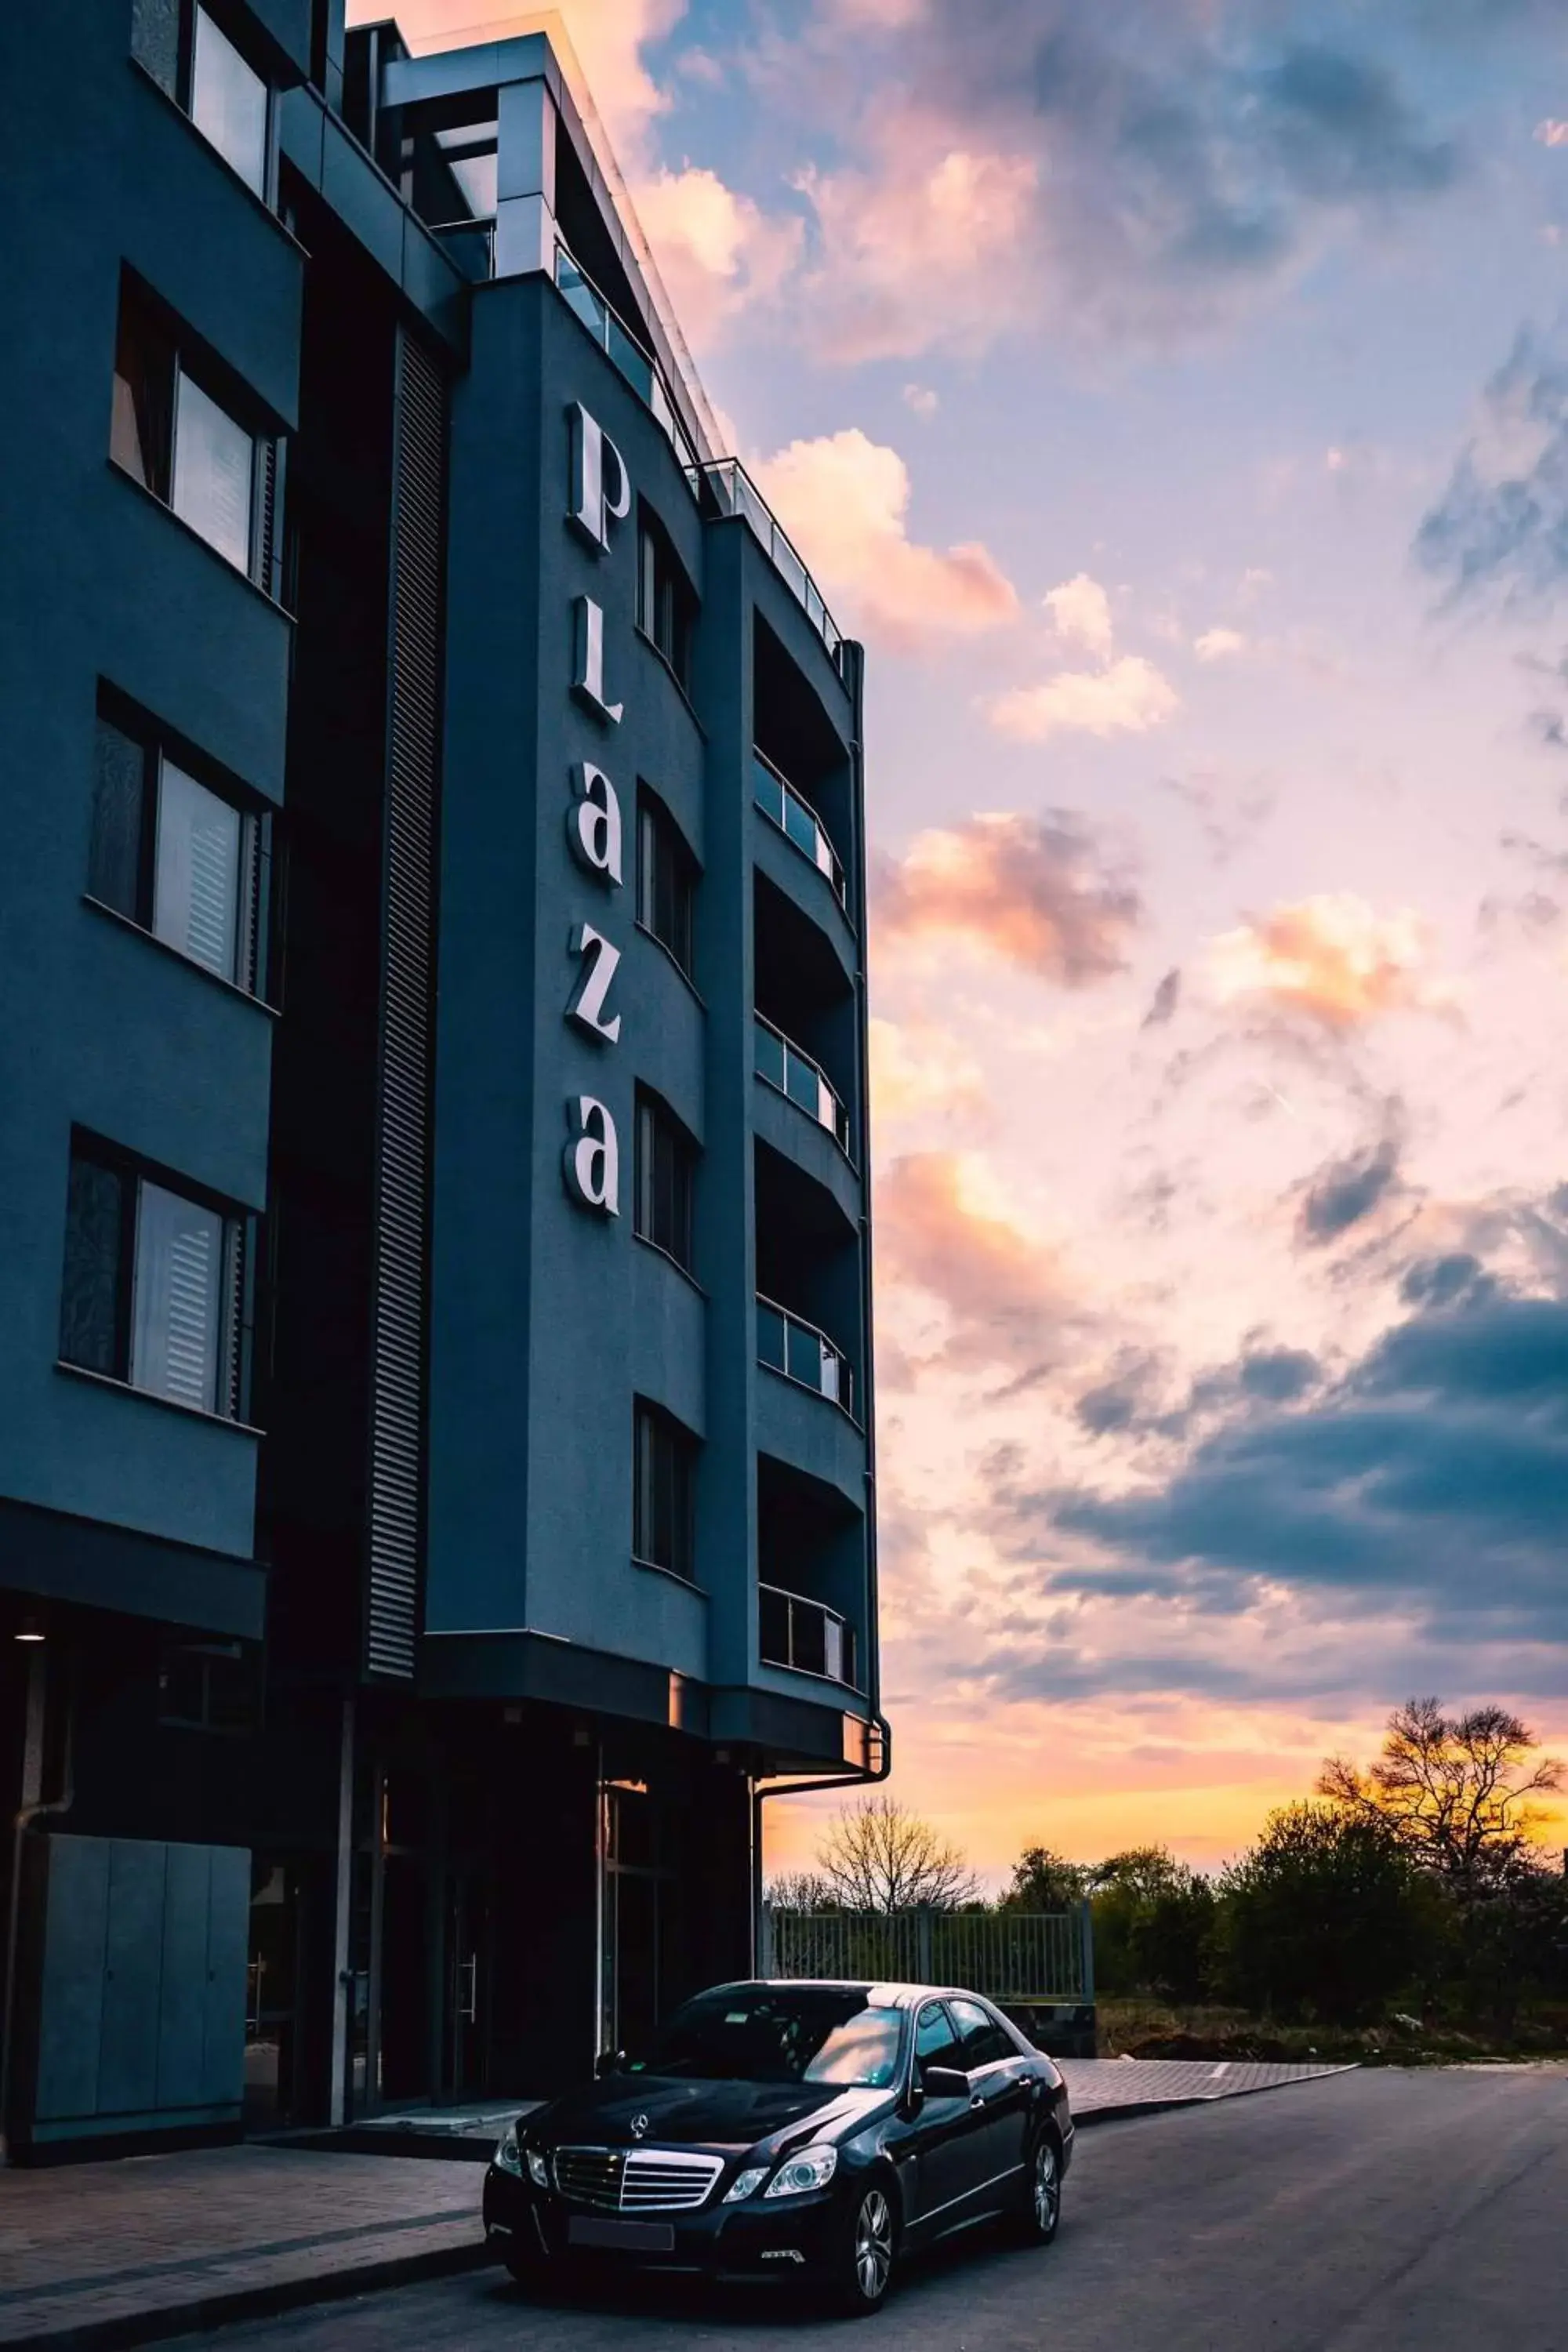 Property building in Plaza Hotel Plovdiv